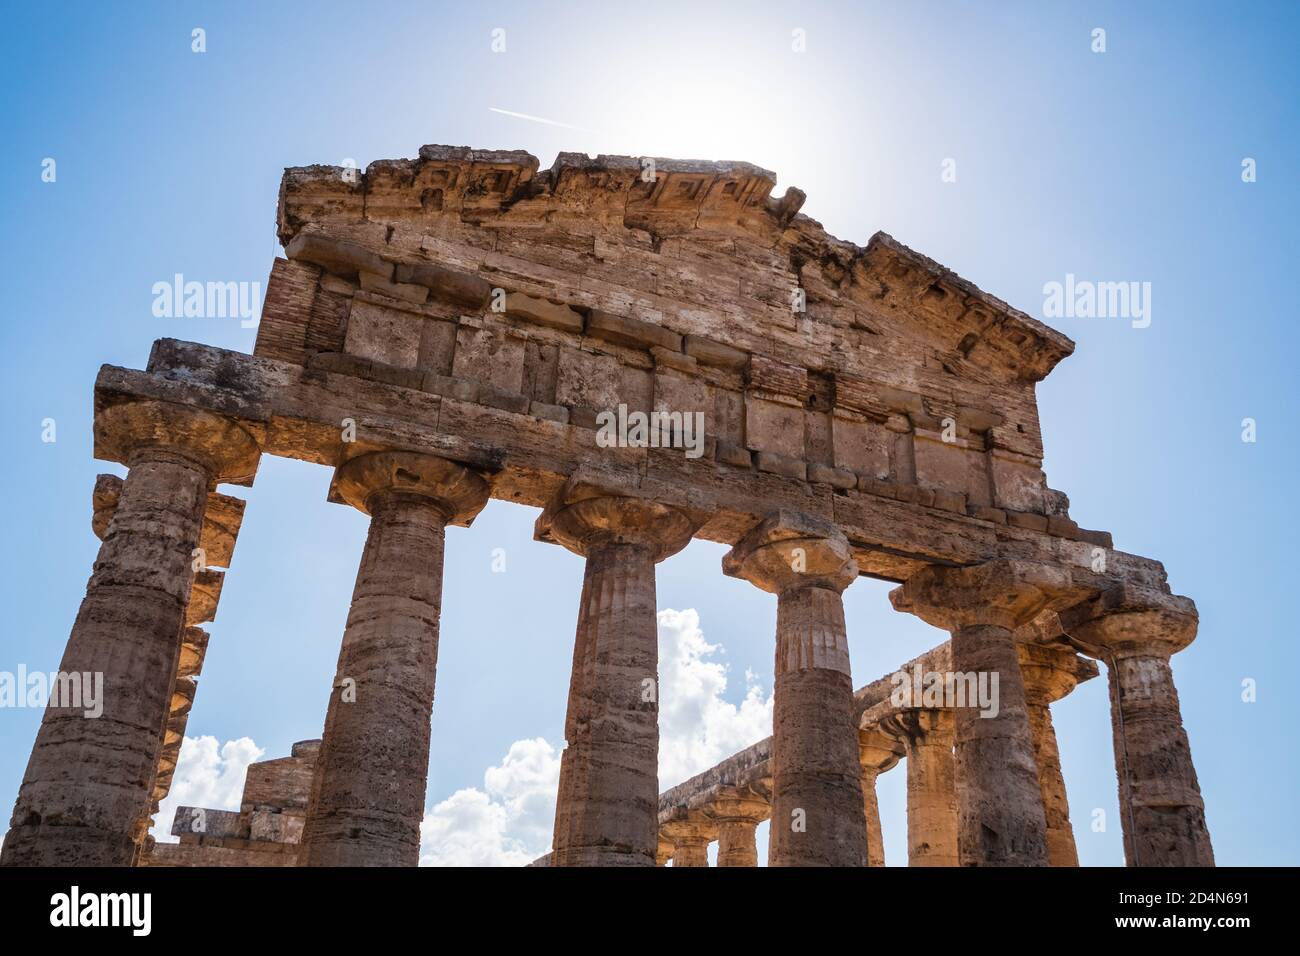 Altgriechischer Tempel der Athena in Paestum, Italien früher bekannt als Tempel von Ceres architrave, Frieze und Gesims mit dorischen Säulen Stockfoto